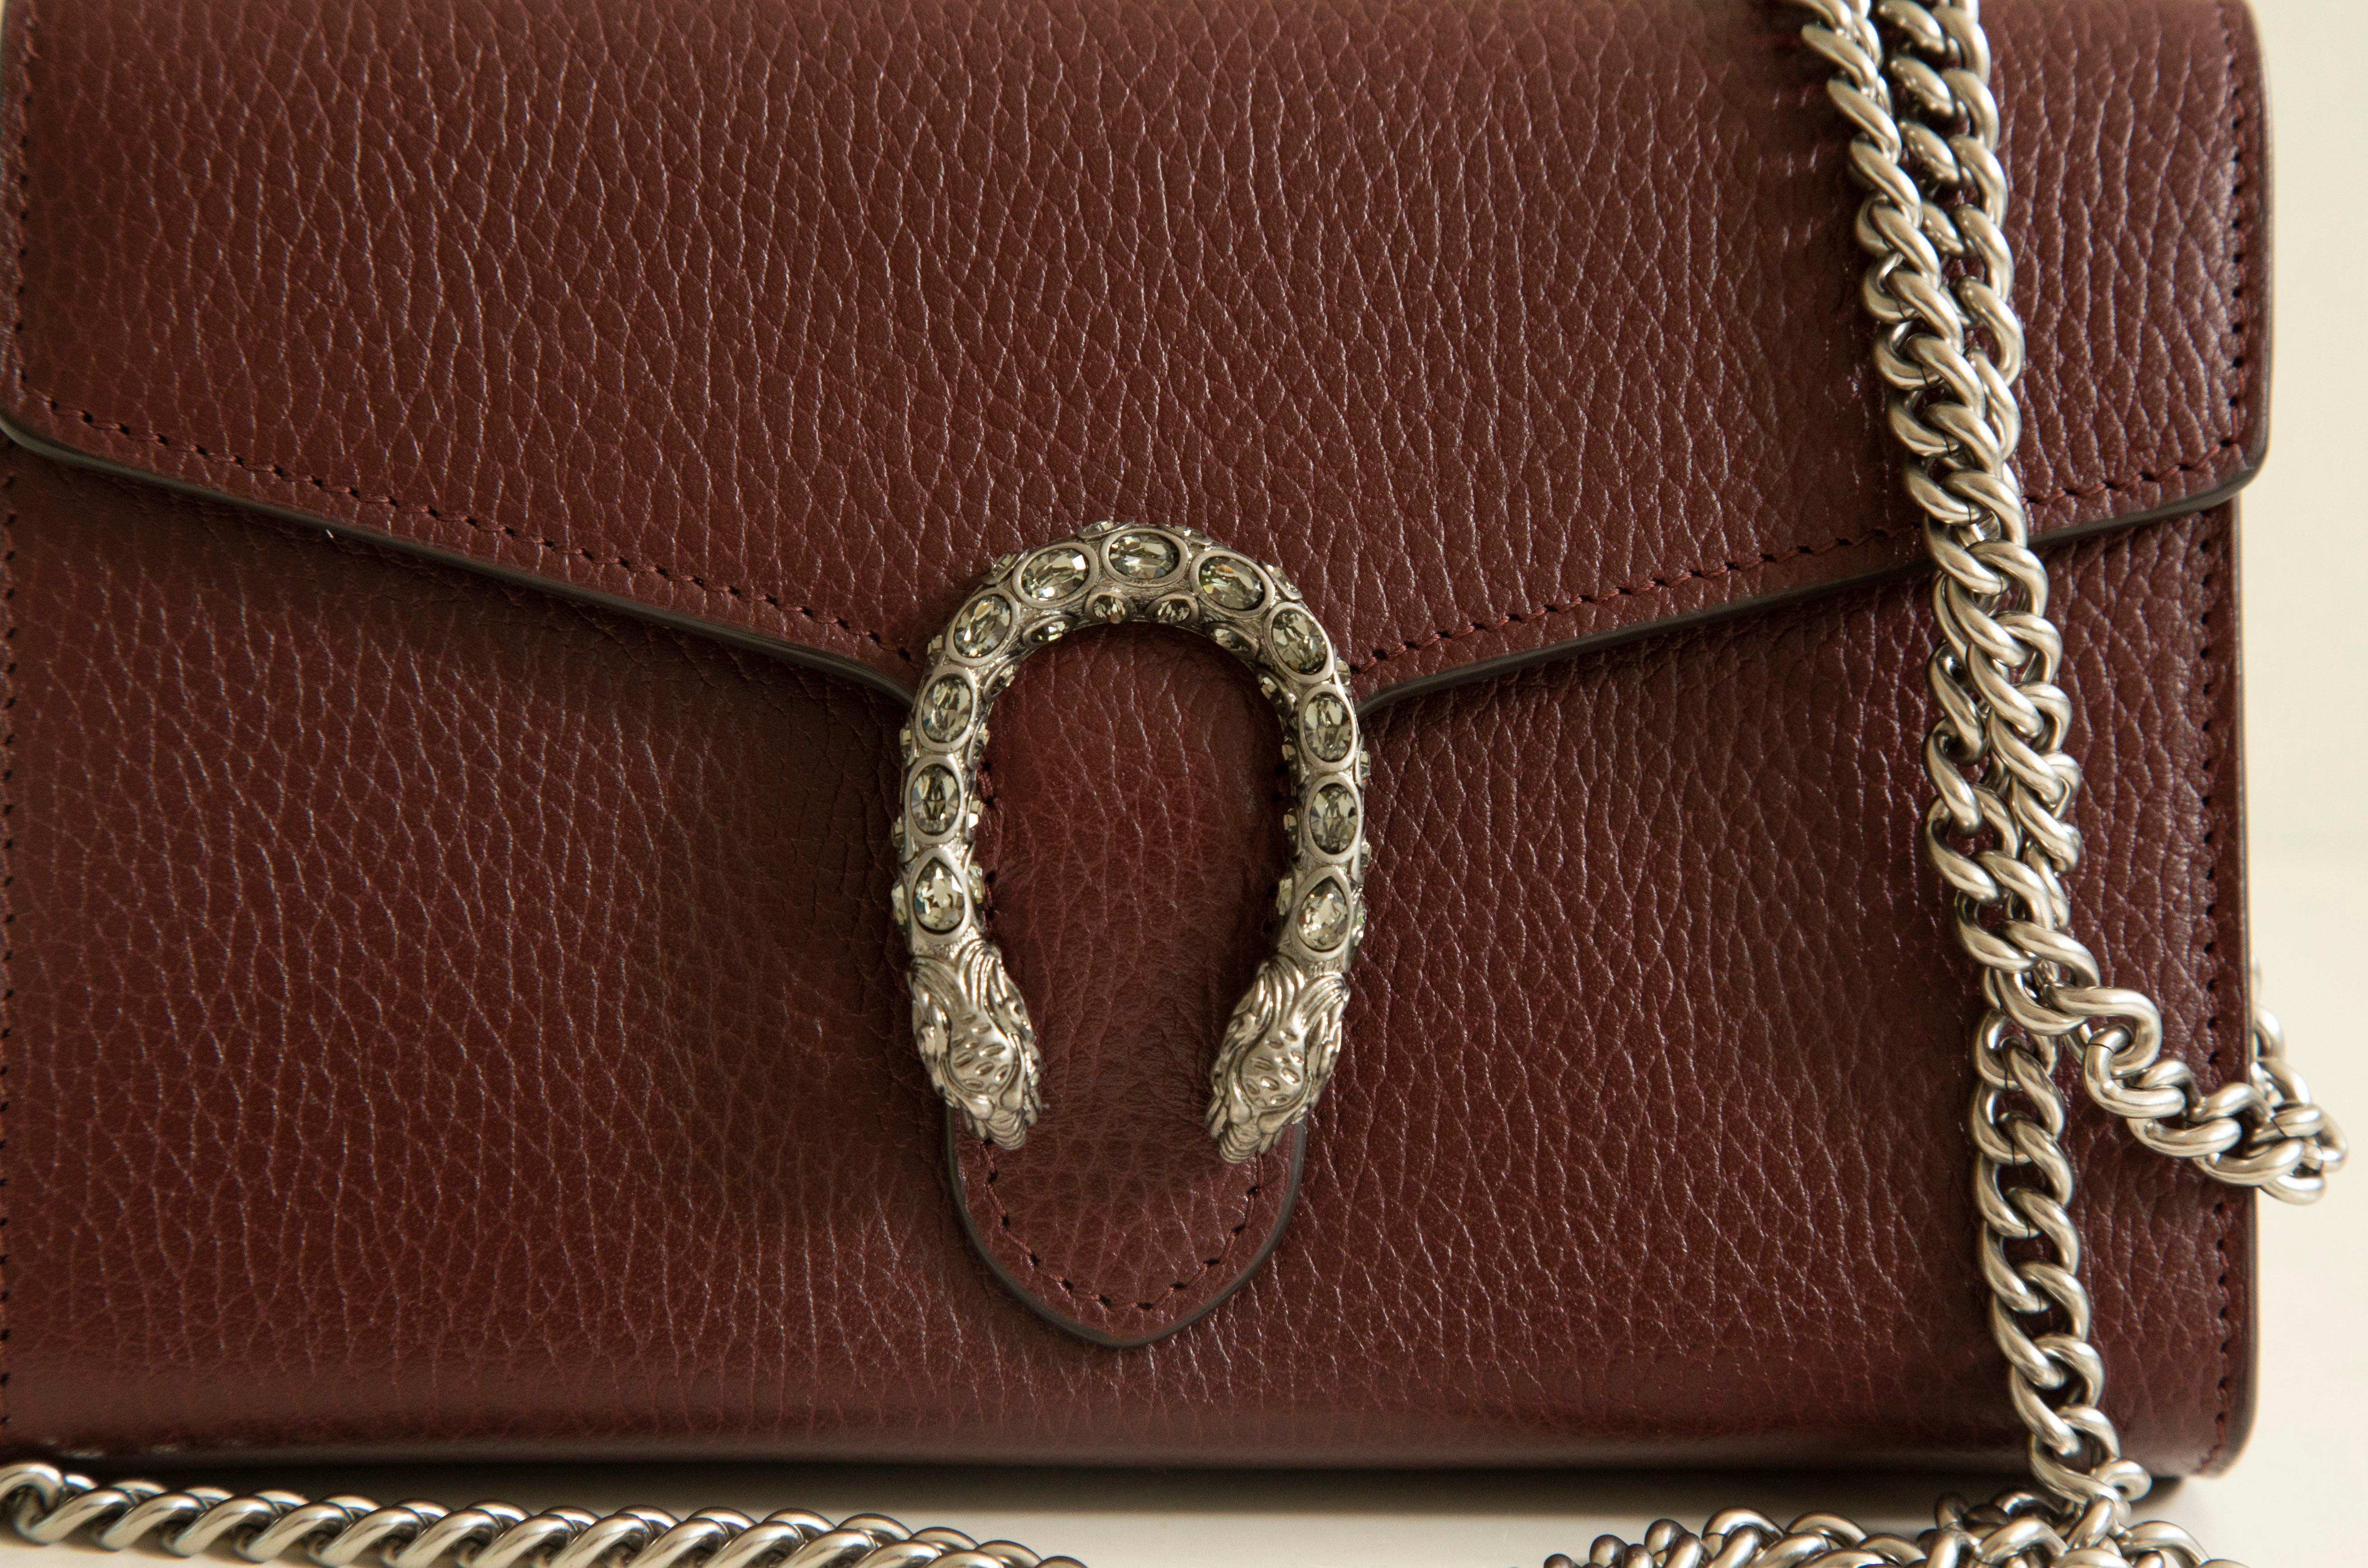 Le mini-sac à chaîne en cuir Gucci Dionysus est réalisé en cuir bordeaux avec des 
Quincaillerie ancienne de couleur argentée. Le sac est doté d'un  Fermeture à éperon en forme de tête de tigre - un détail unique faisant référence au dieu grec